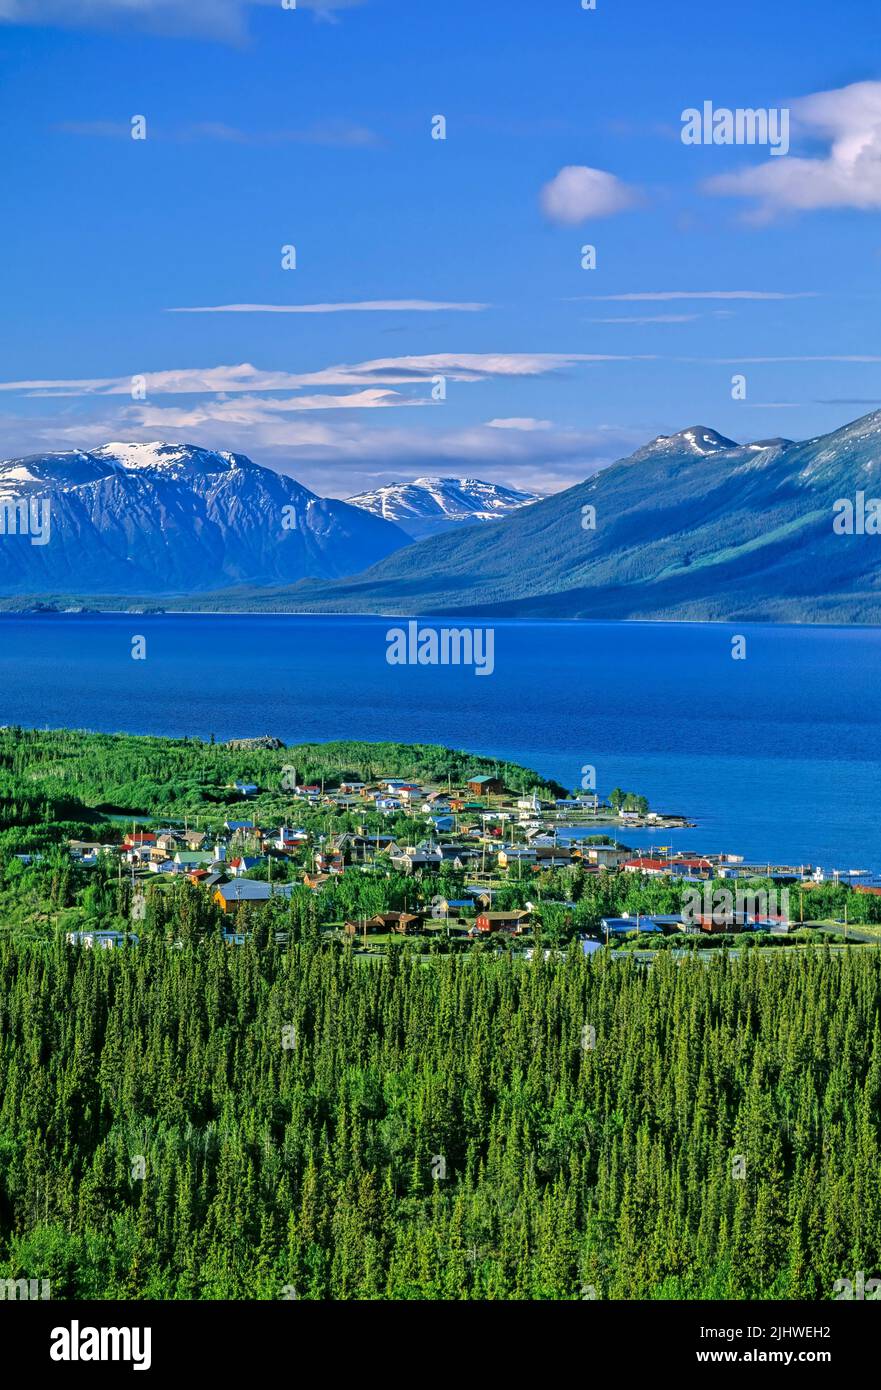 Una vista aérea de la pequeña ciudad de Atlin situada a orillas del lago Atlin en el norte de Columbia Británica, Canadá. Foto de stock